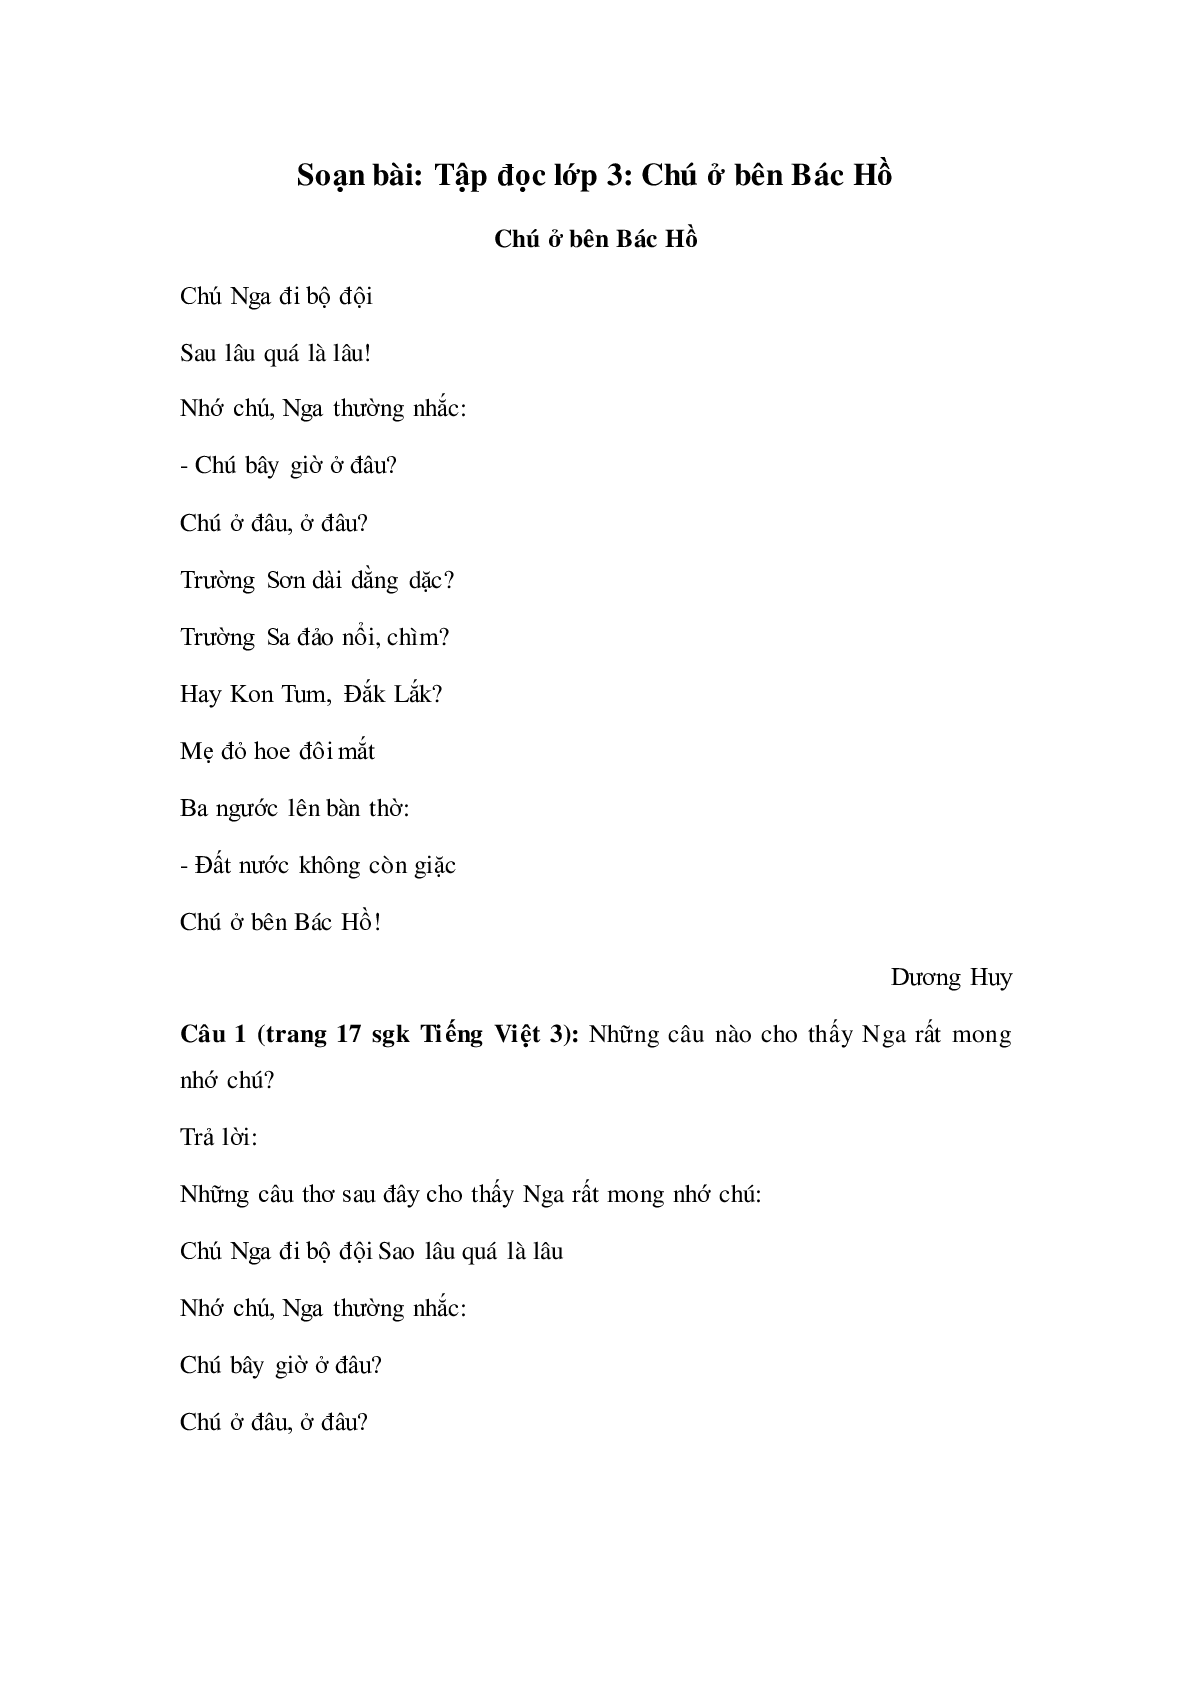 Soạn Tiếng Việt lớp 3: Tập đọc: Chú ở bên Bác Hồ mới nhất (trang 1)